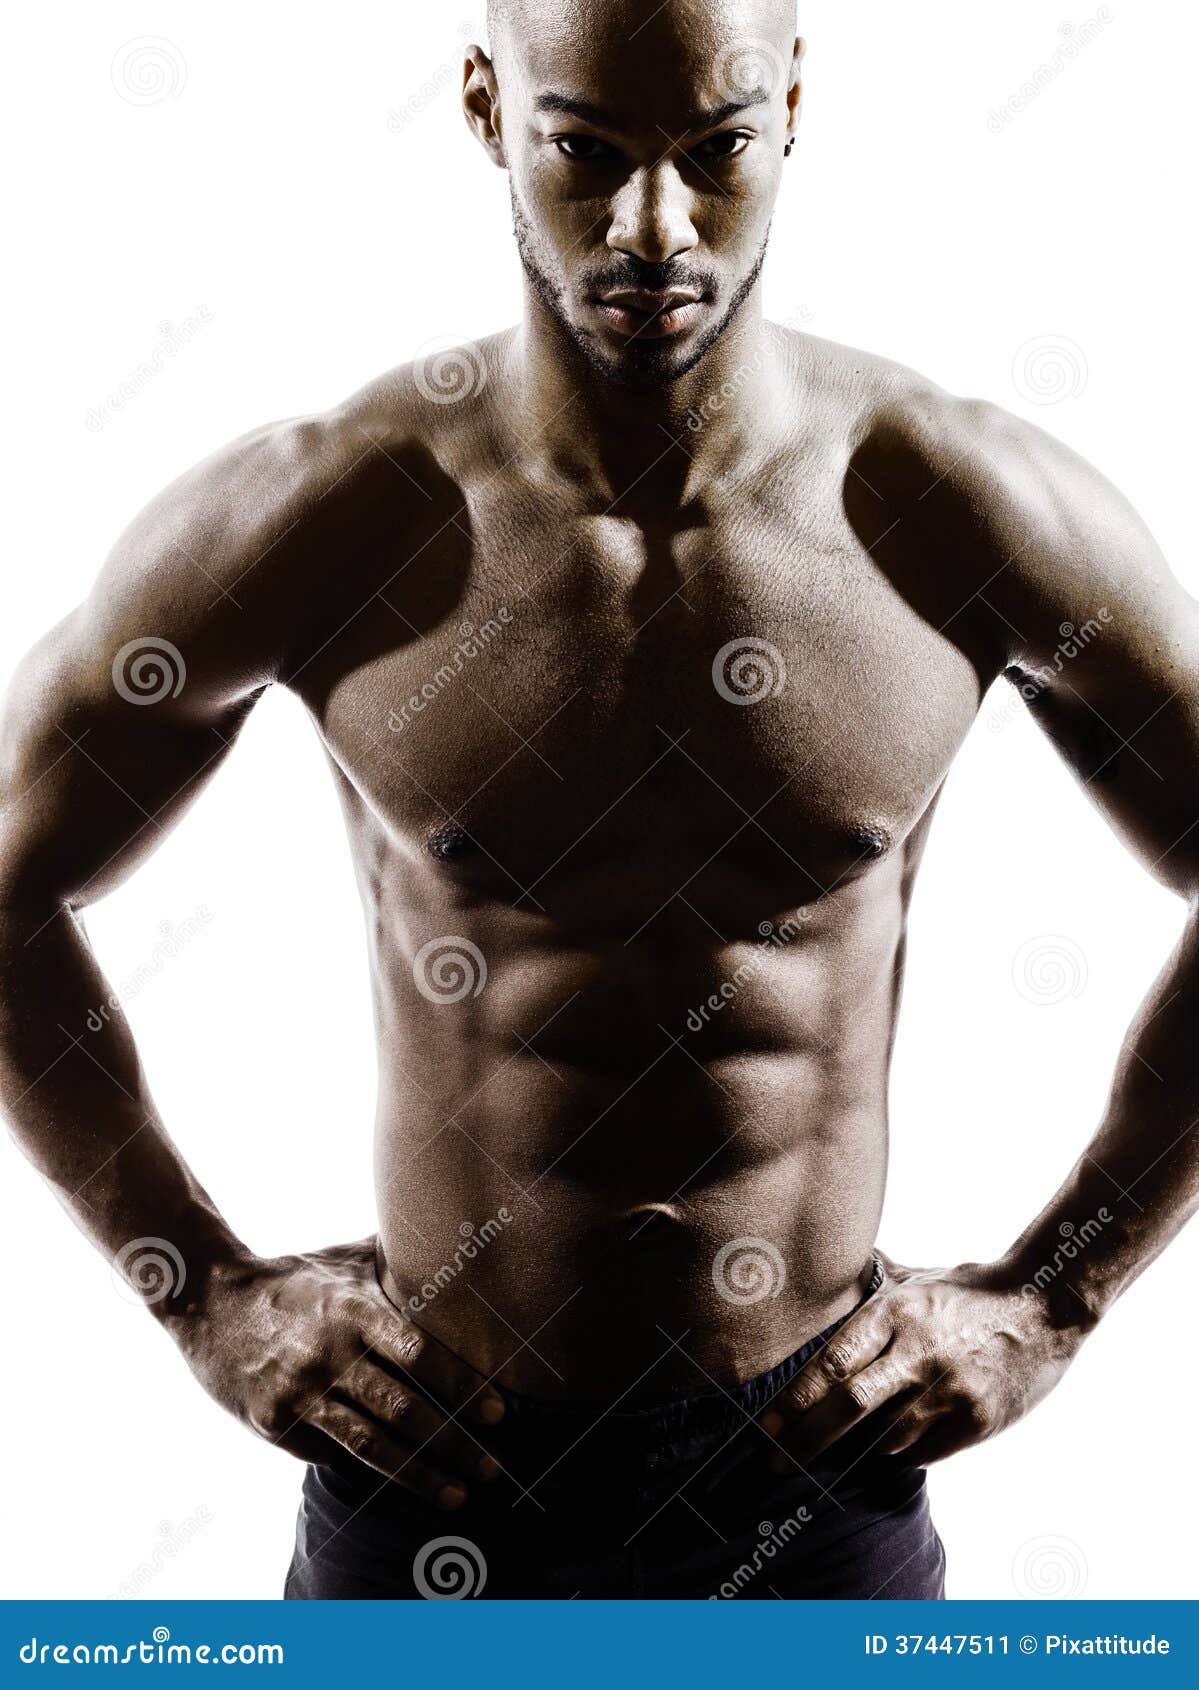 年轻非洲赤裸上身的肌肉修造人常设剪影 库存图片. 图片 包括有 肌肉, 剪影, 英俊, 一个, 查出, 投反对票 - 45392271